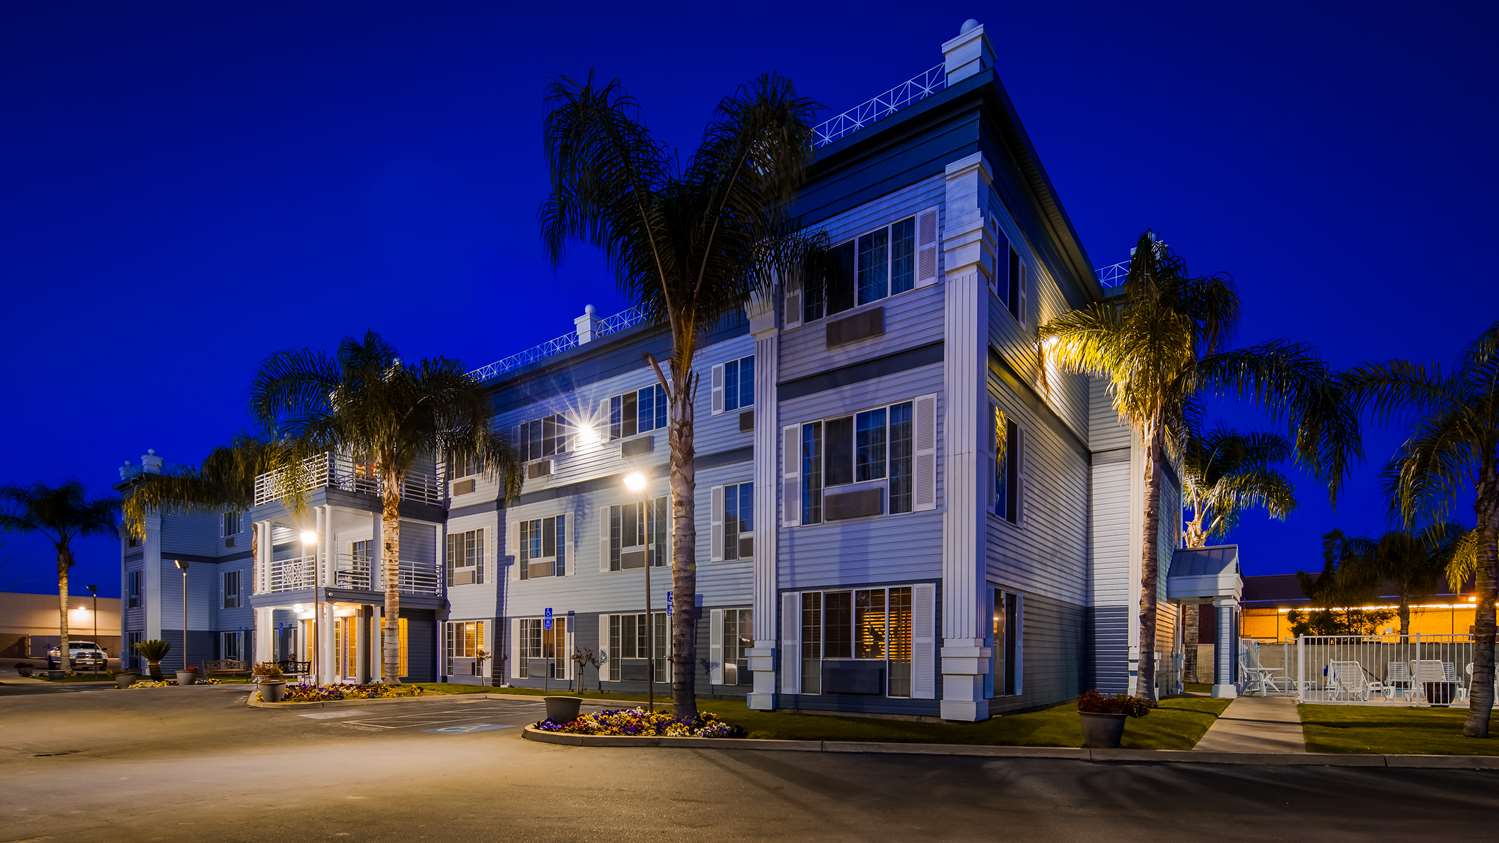 Selma Hotels Best Western Colonial Inn Hotels Near Fresno